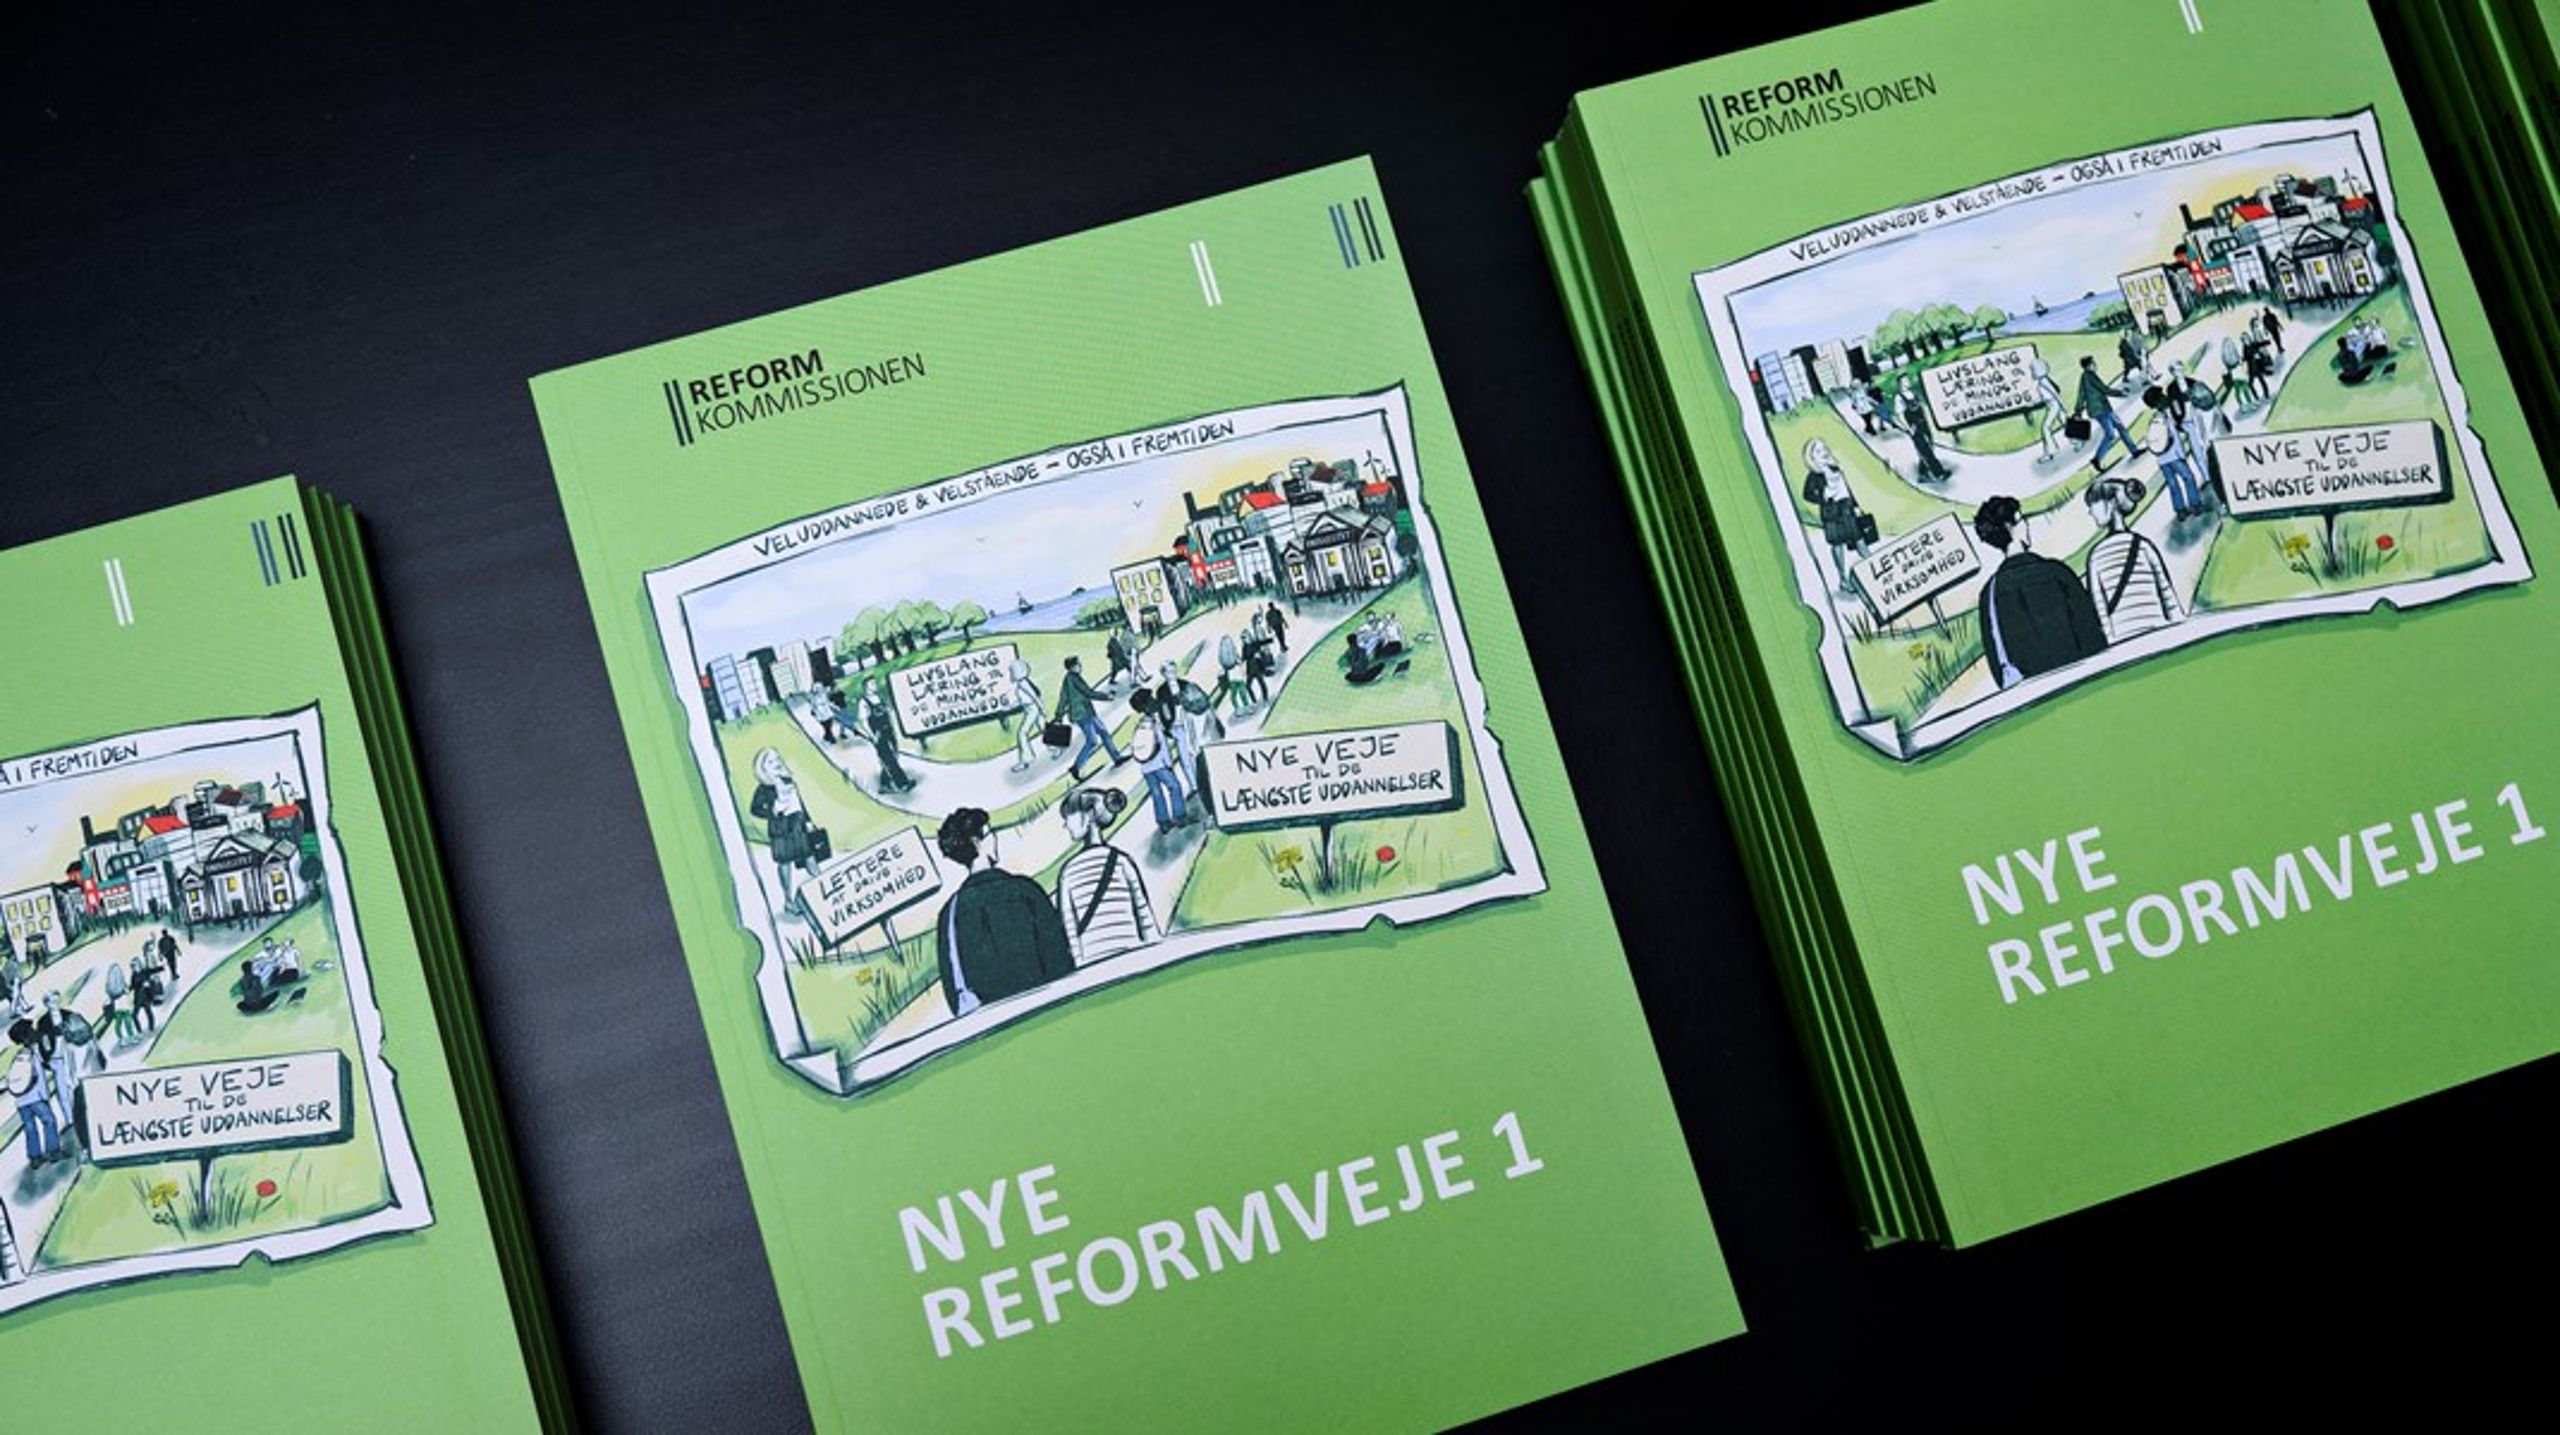 Tirsdag løfter Reformkommissionen sløret for sin sidste rapport i serien 'Nye Reformveje'.